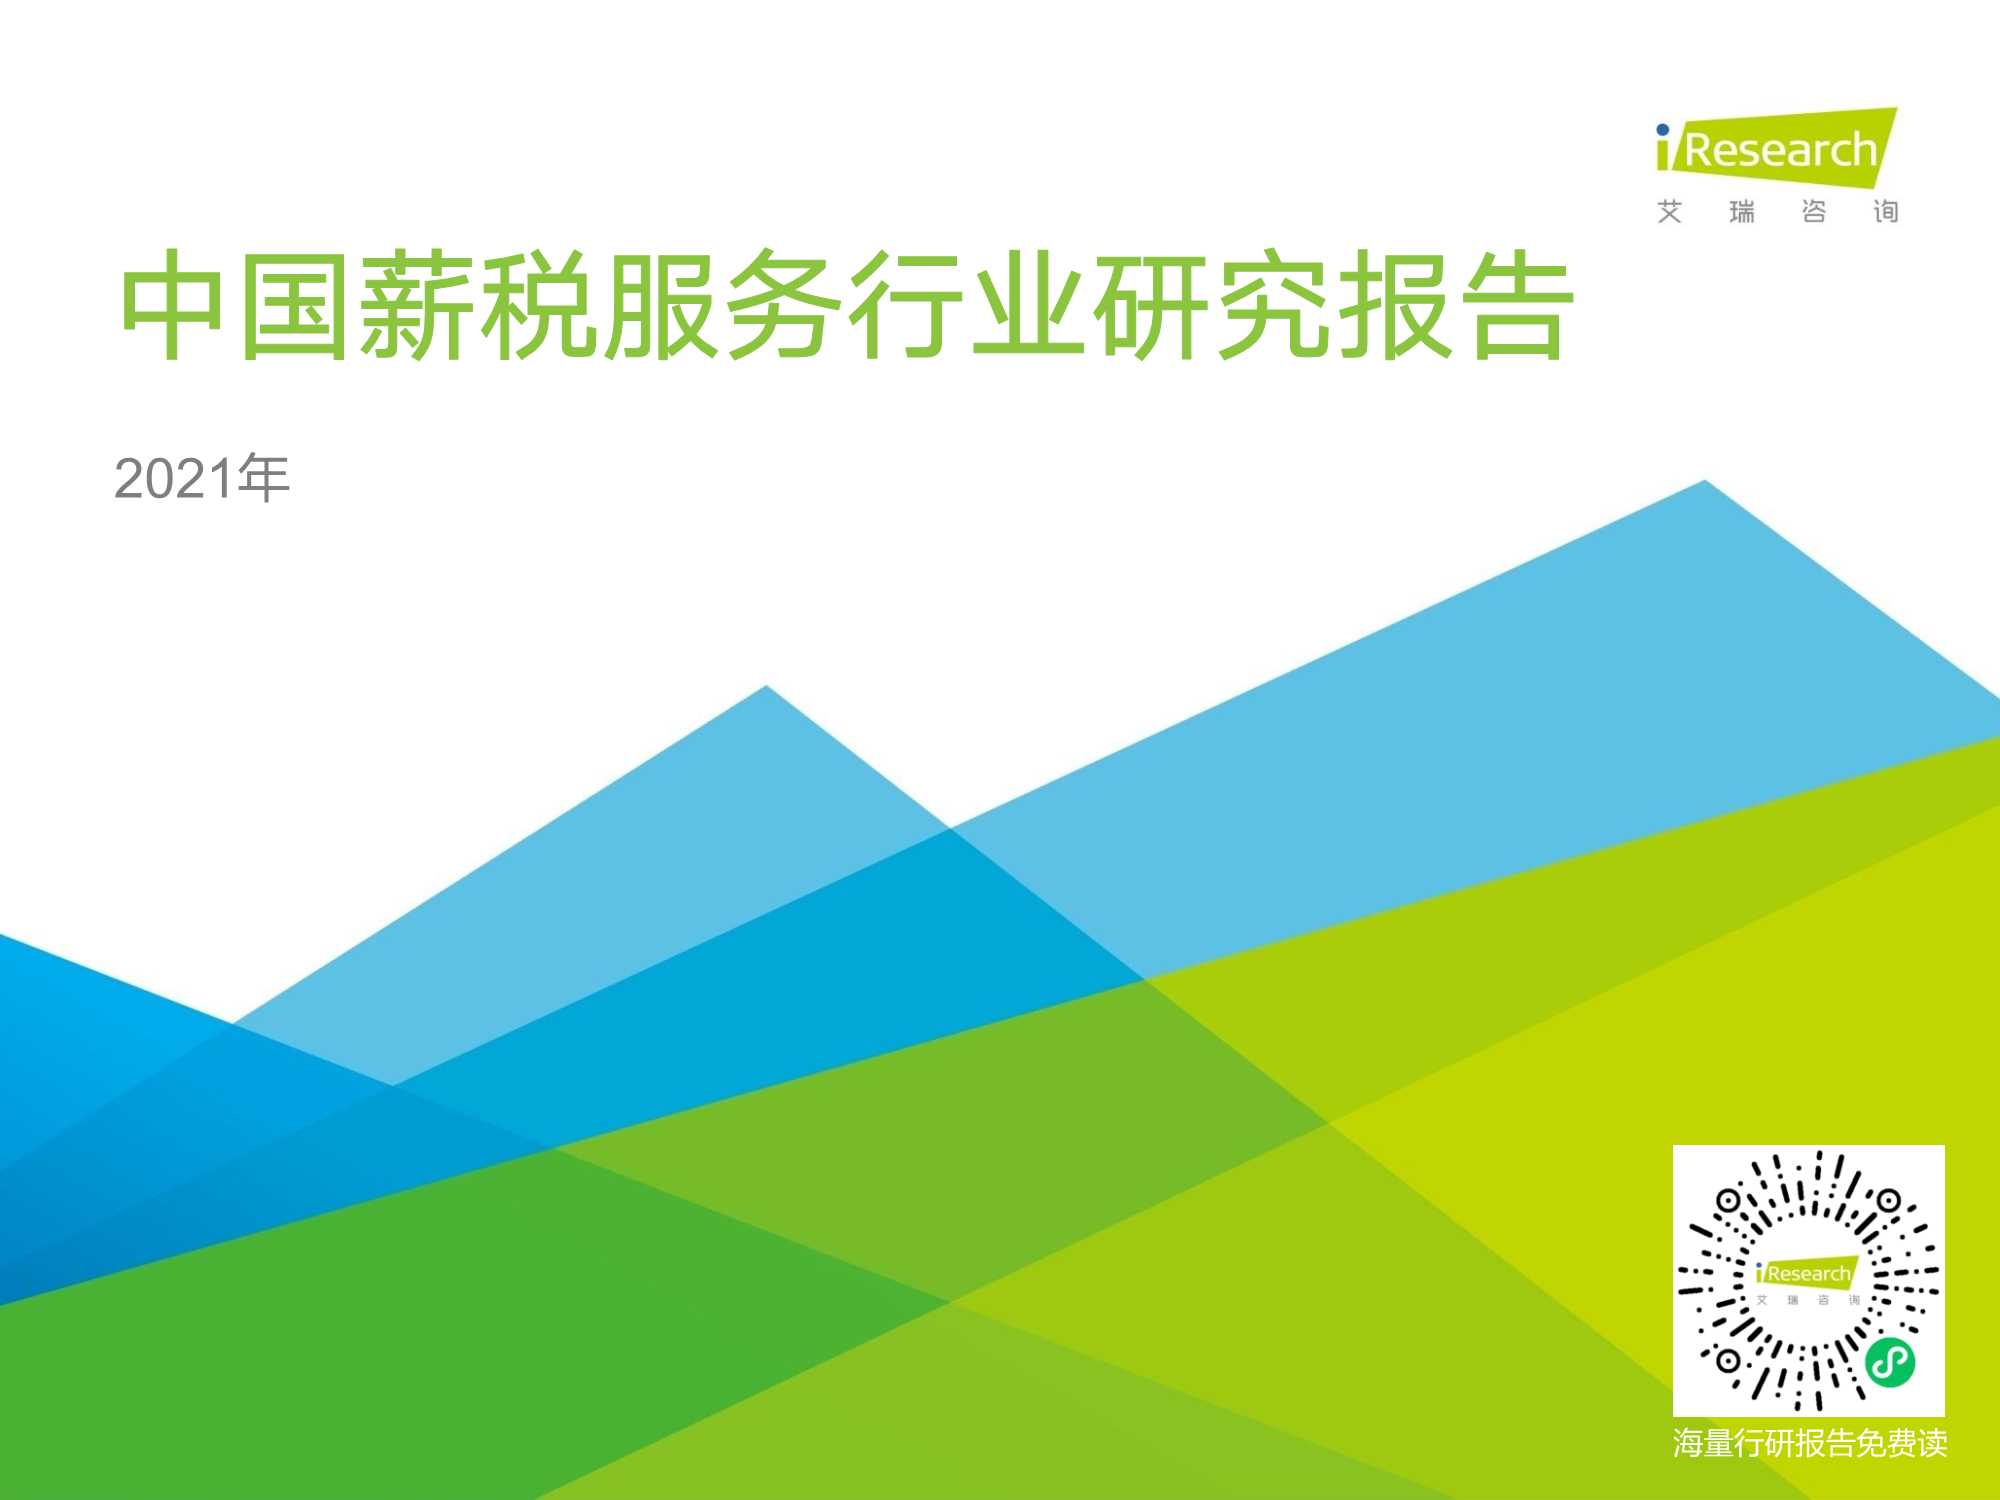 艾瑞咨询-2021年中国薪税服务行业研究报告-2021.08-50页